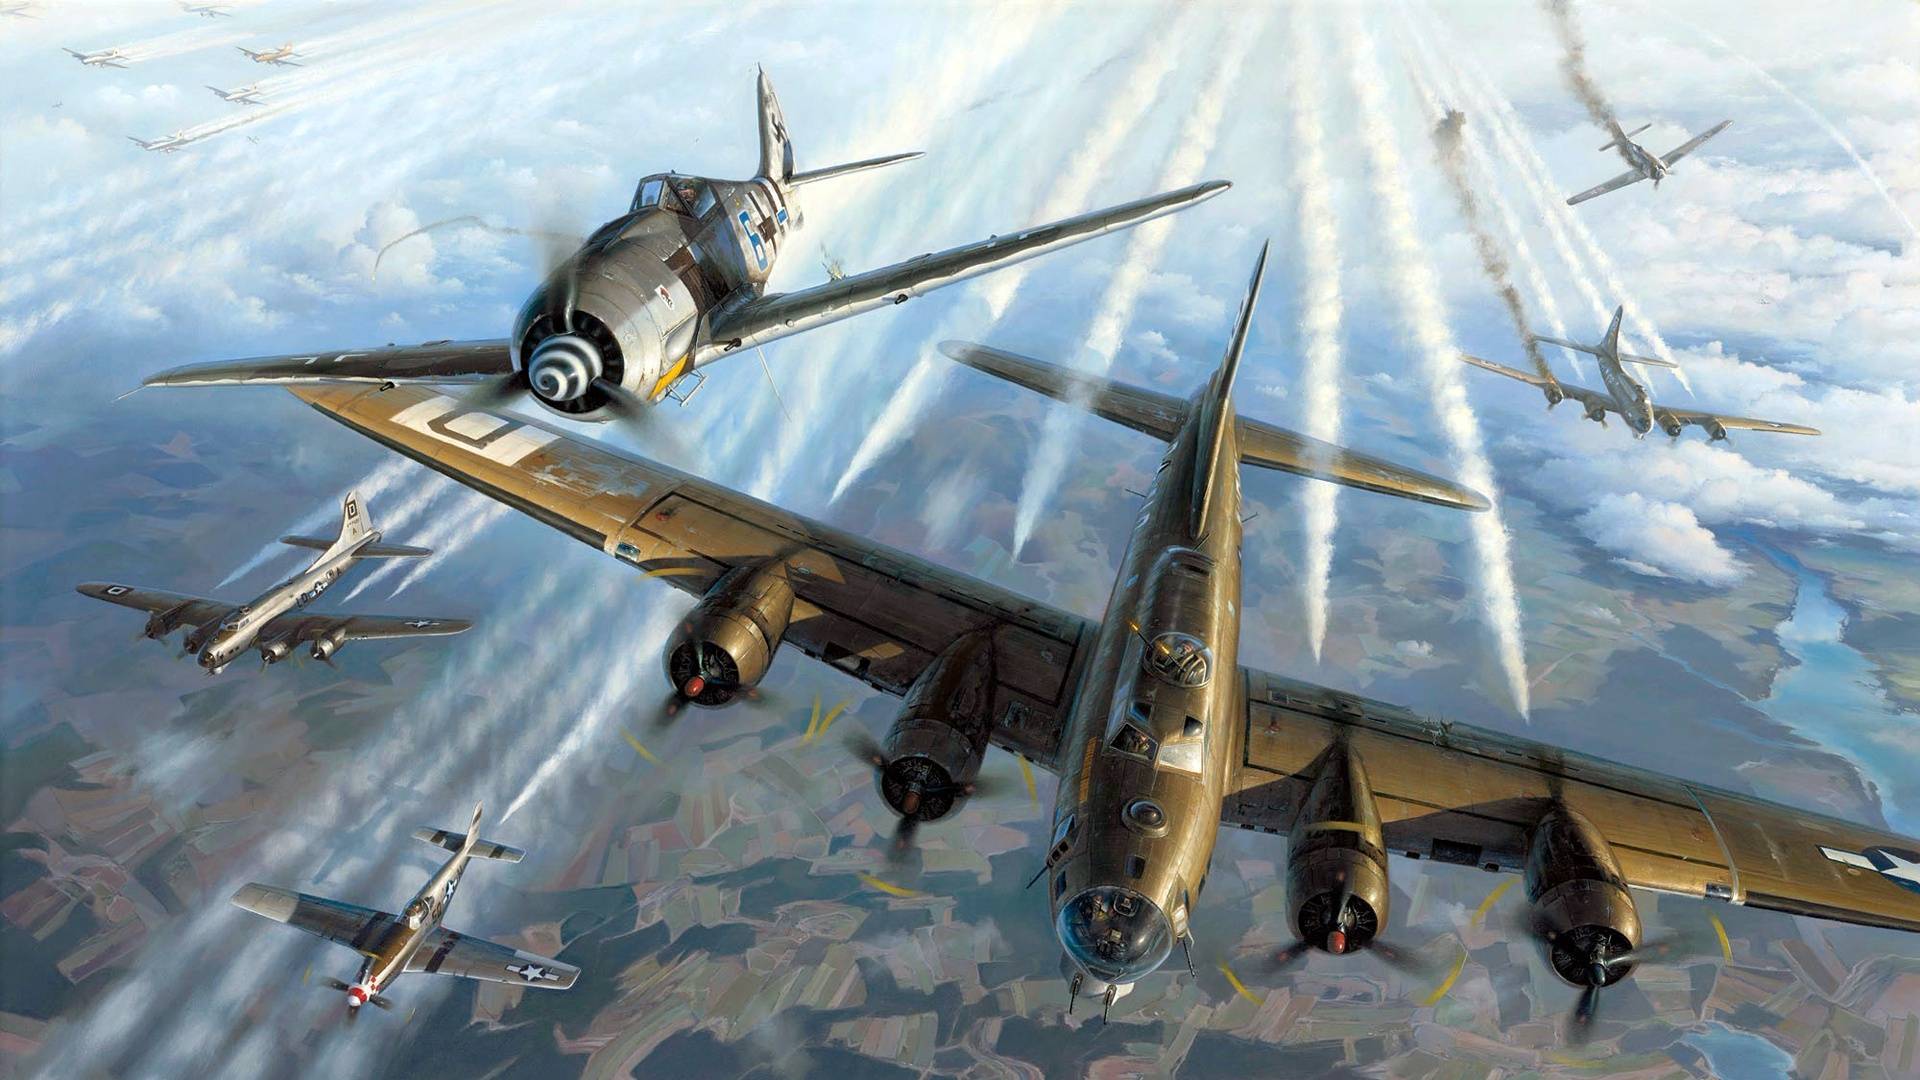 Советская «суперкрепость» под названием бомбардировщик ту-4